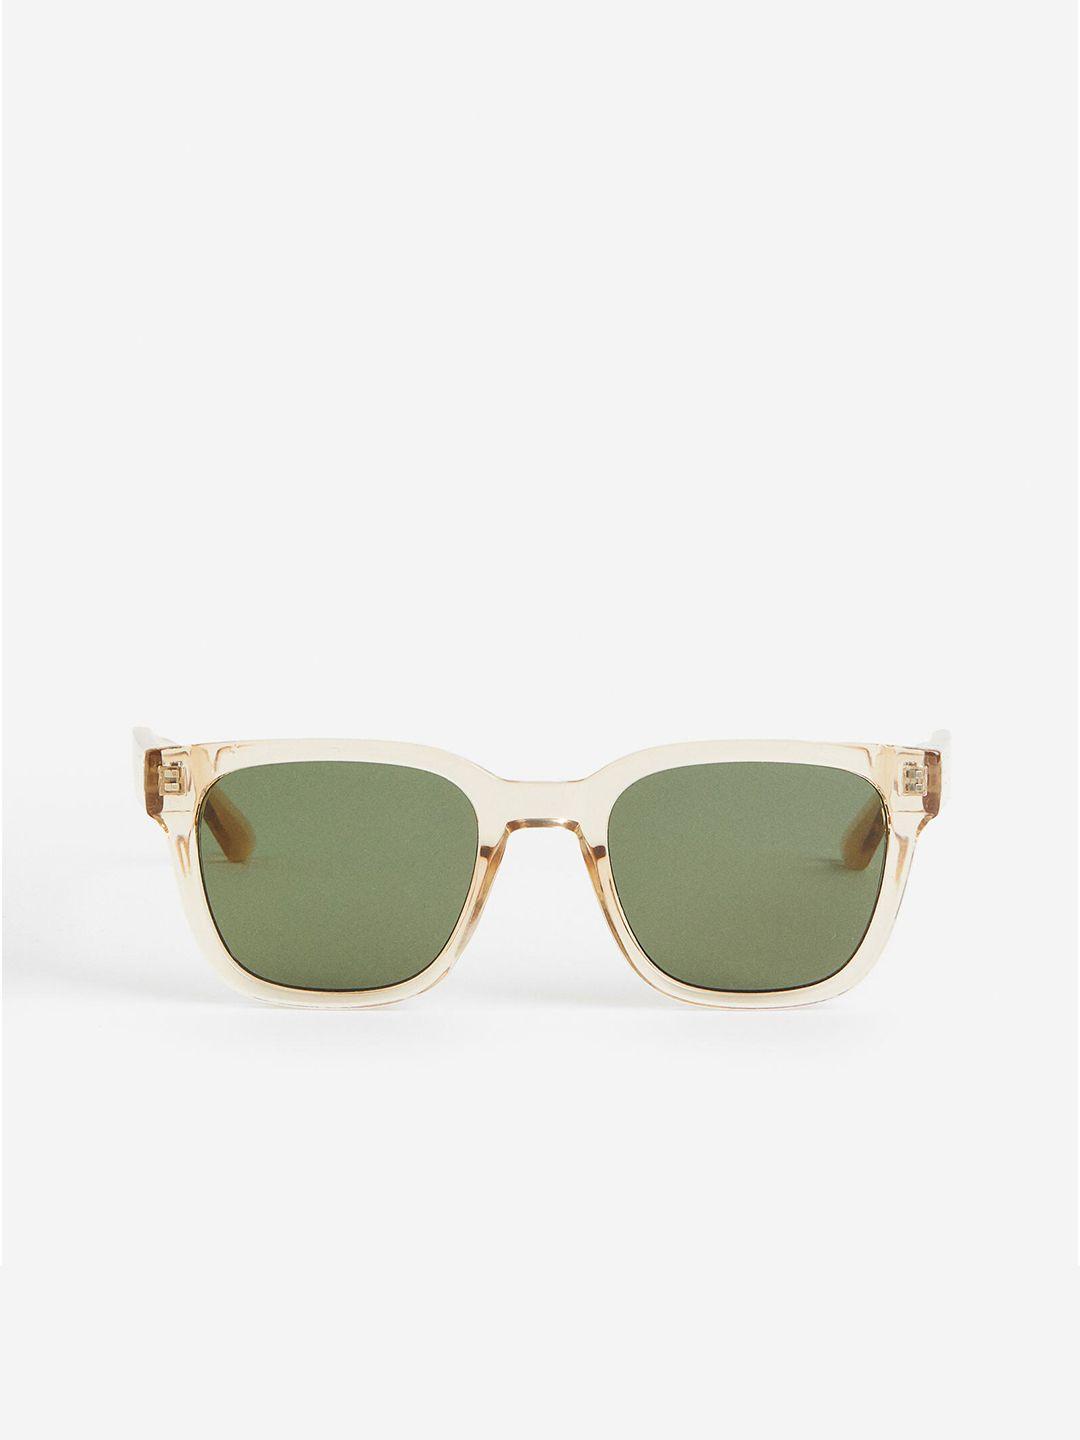 h&m-men-sunglasses-1046116008